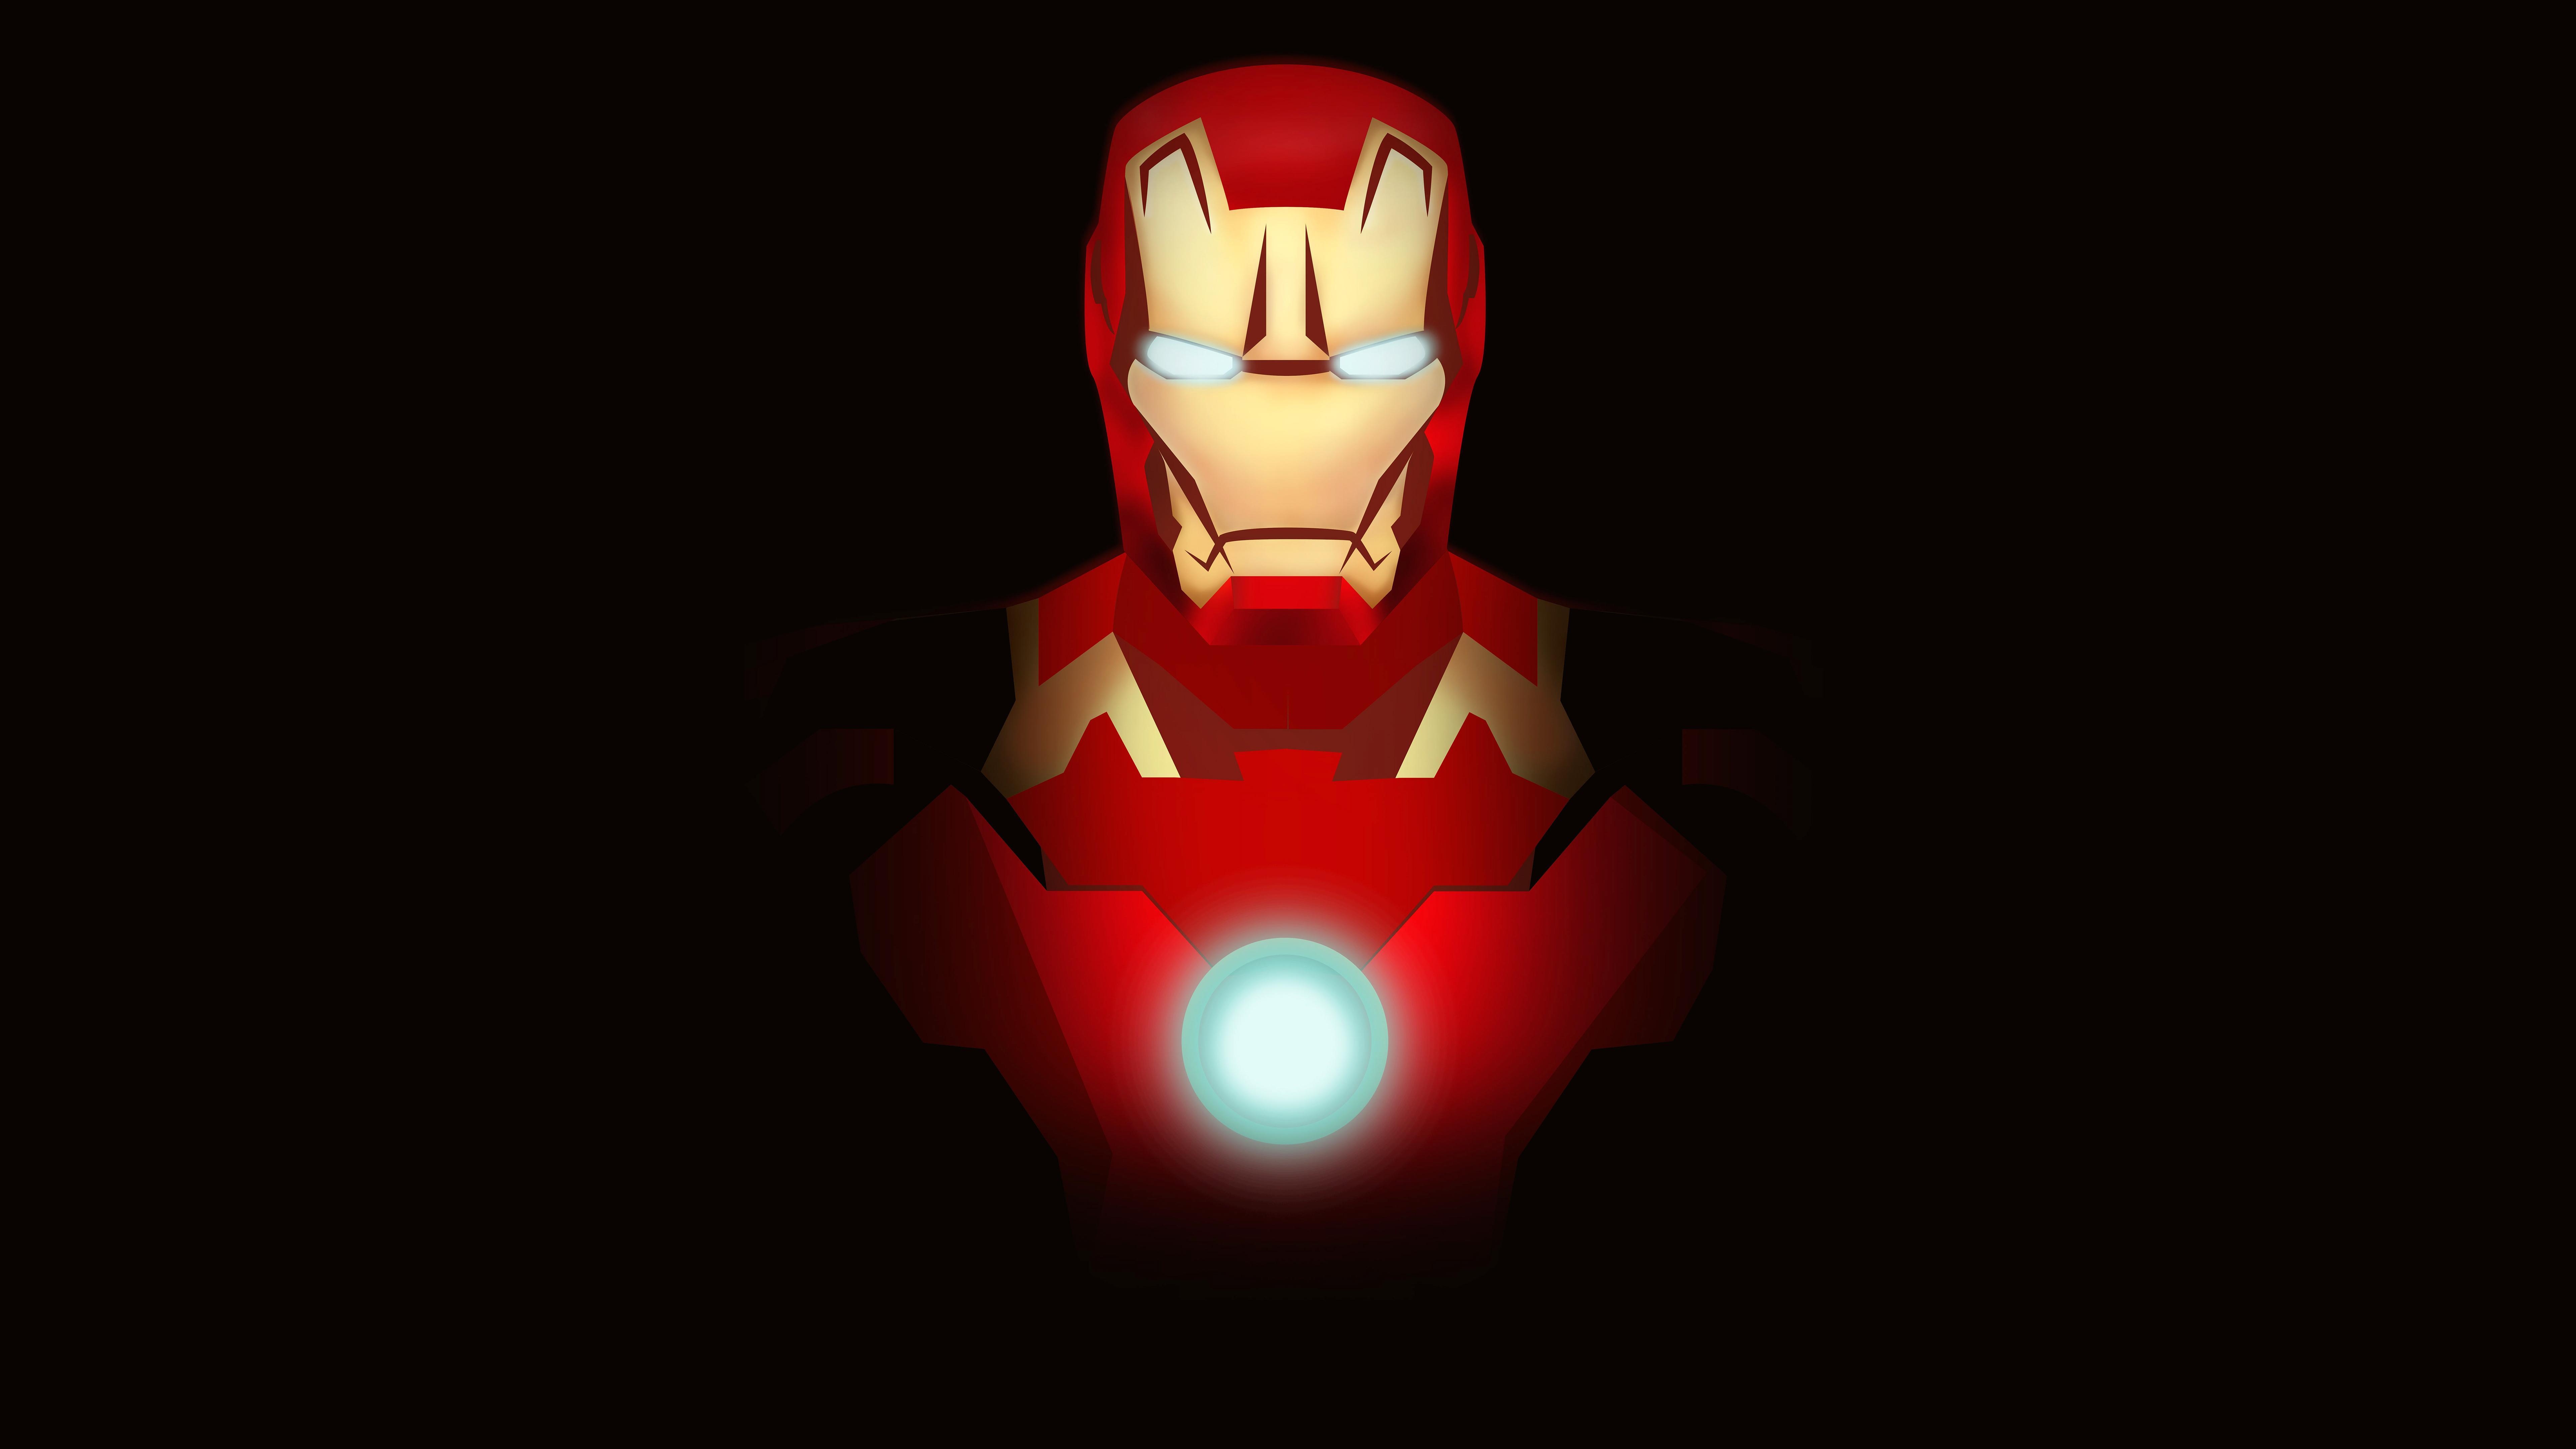 Iron Man Minimal Fan art 4K 8K Wallpaper